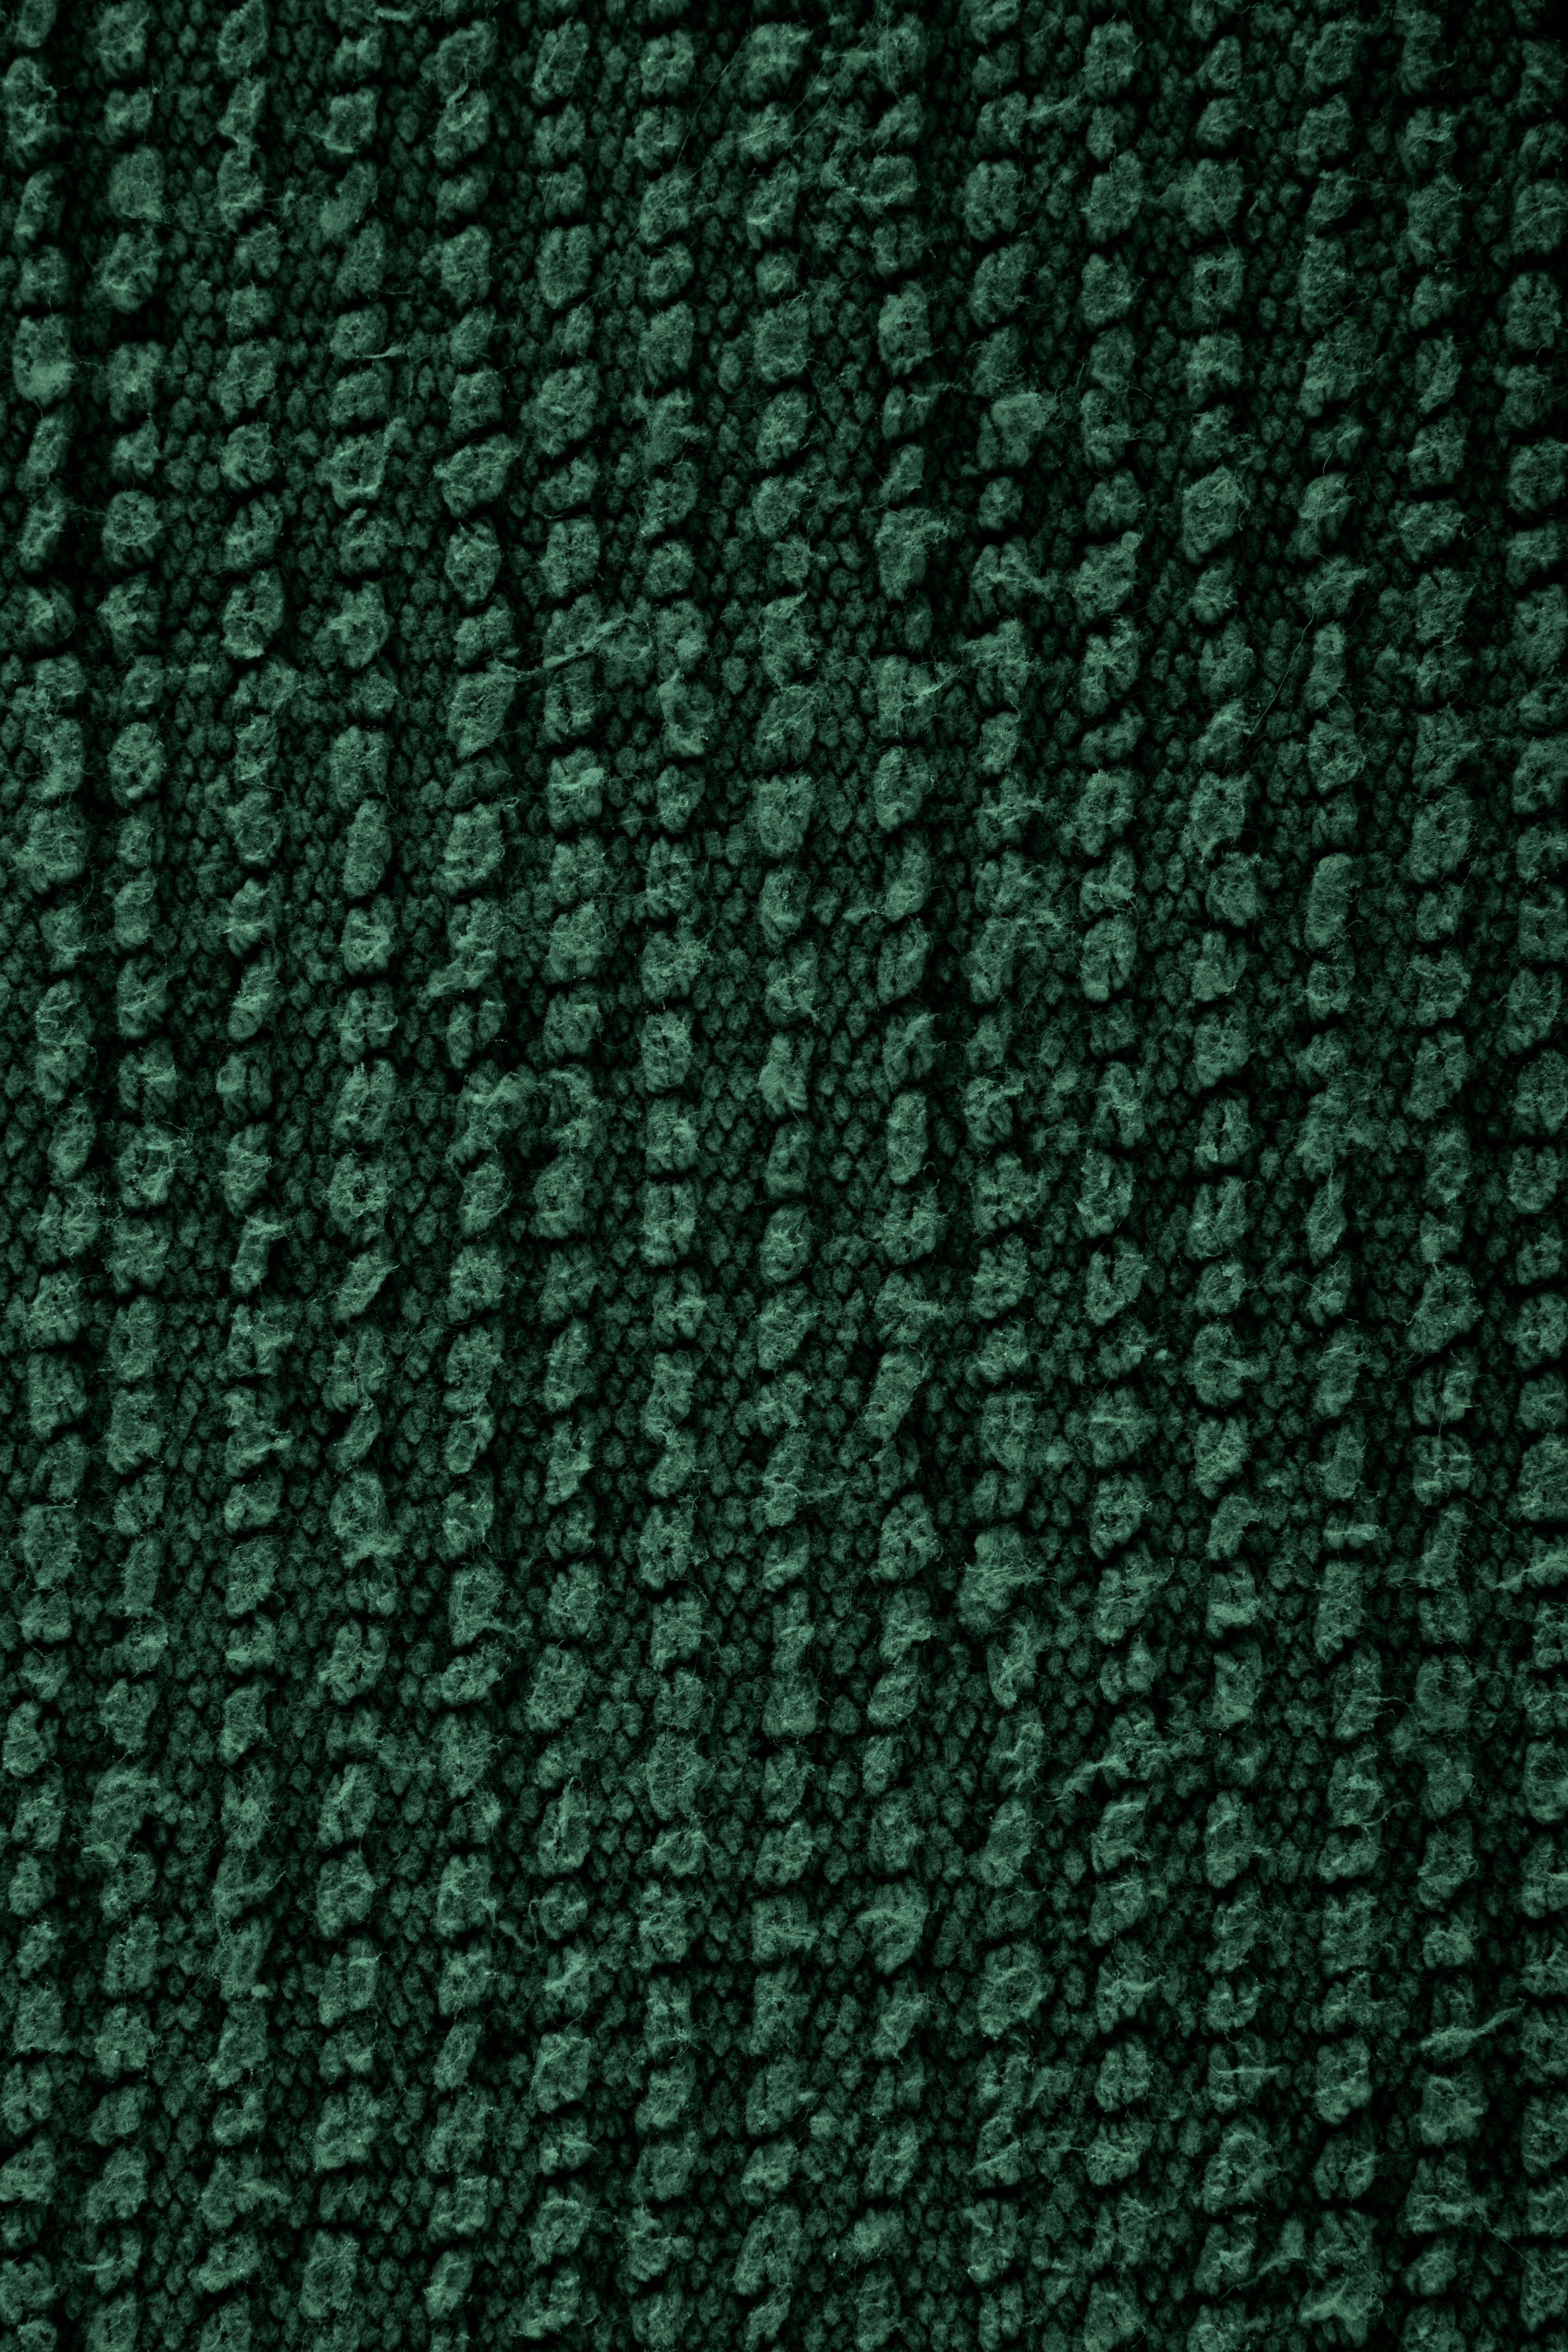 RIVA badtapijt - katoen antislip, 60x60cm, dark green